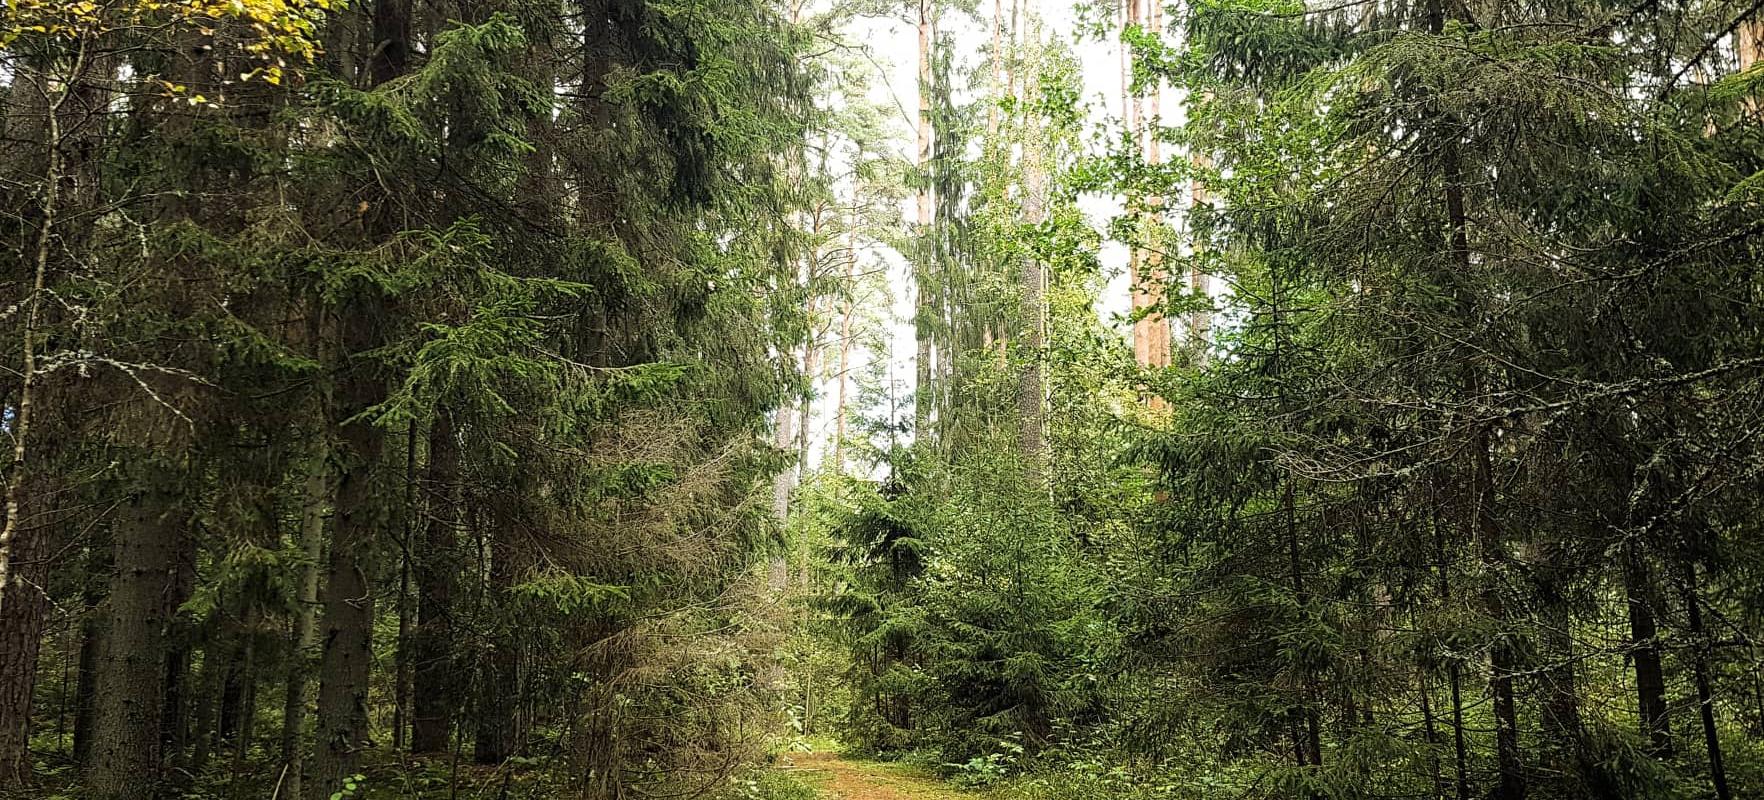 Vapramäe hiking trails